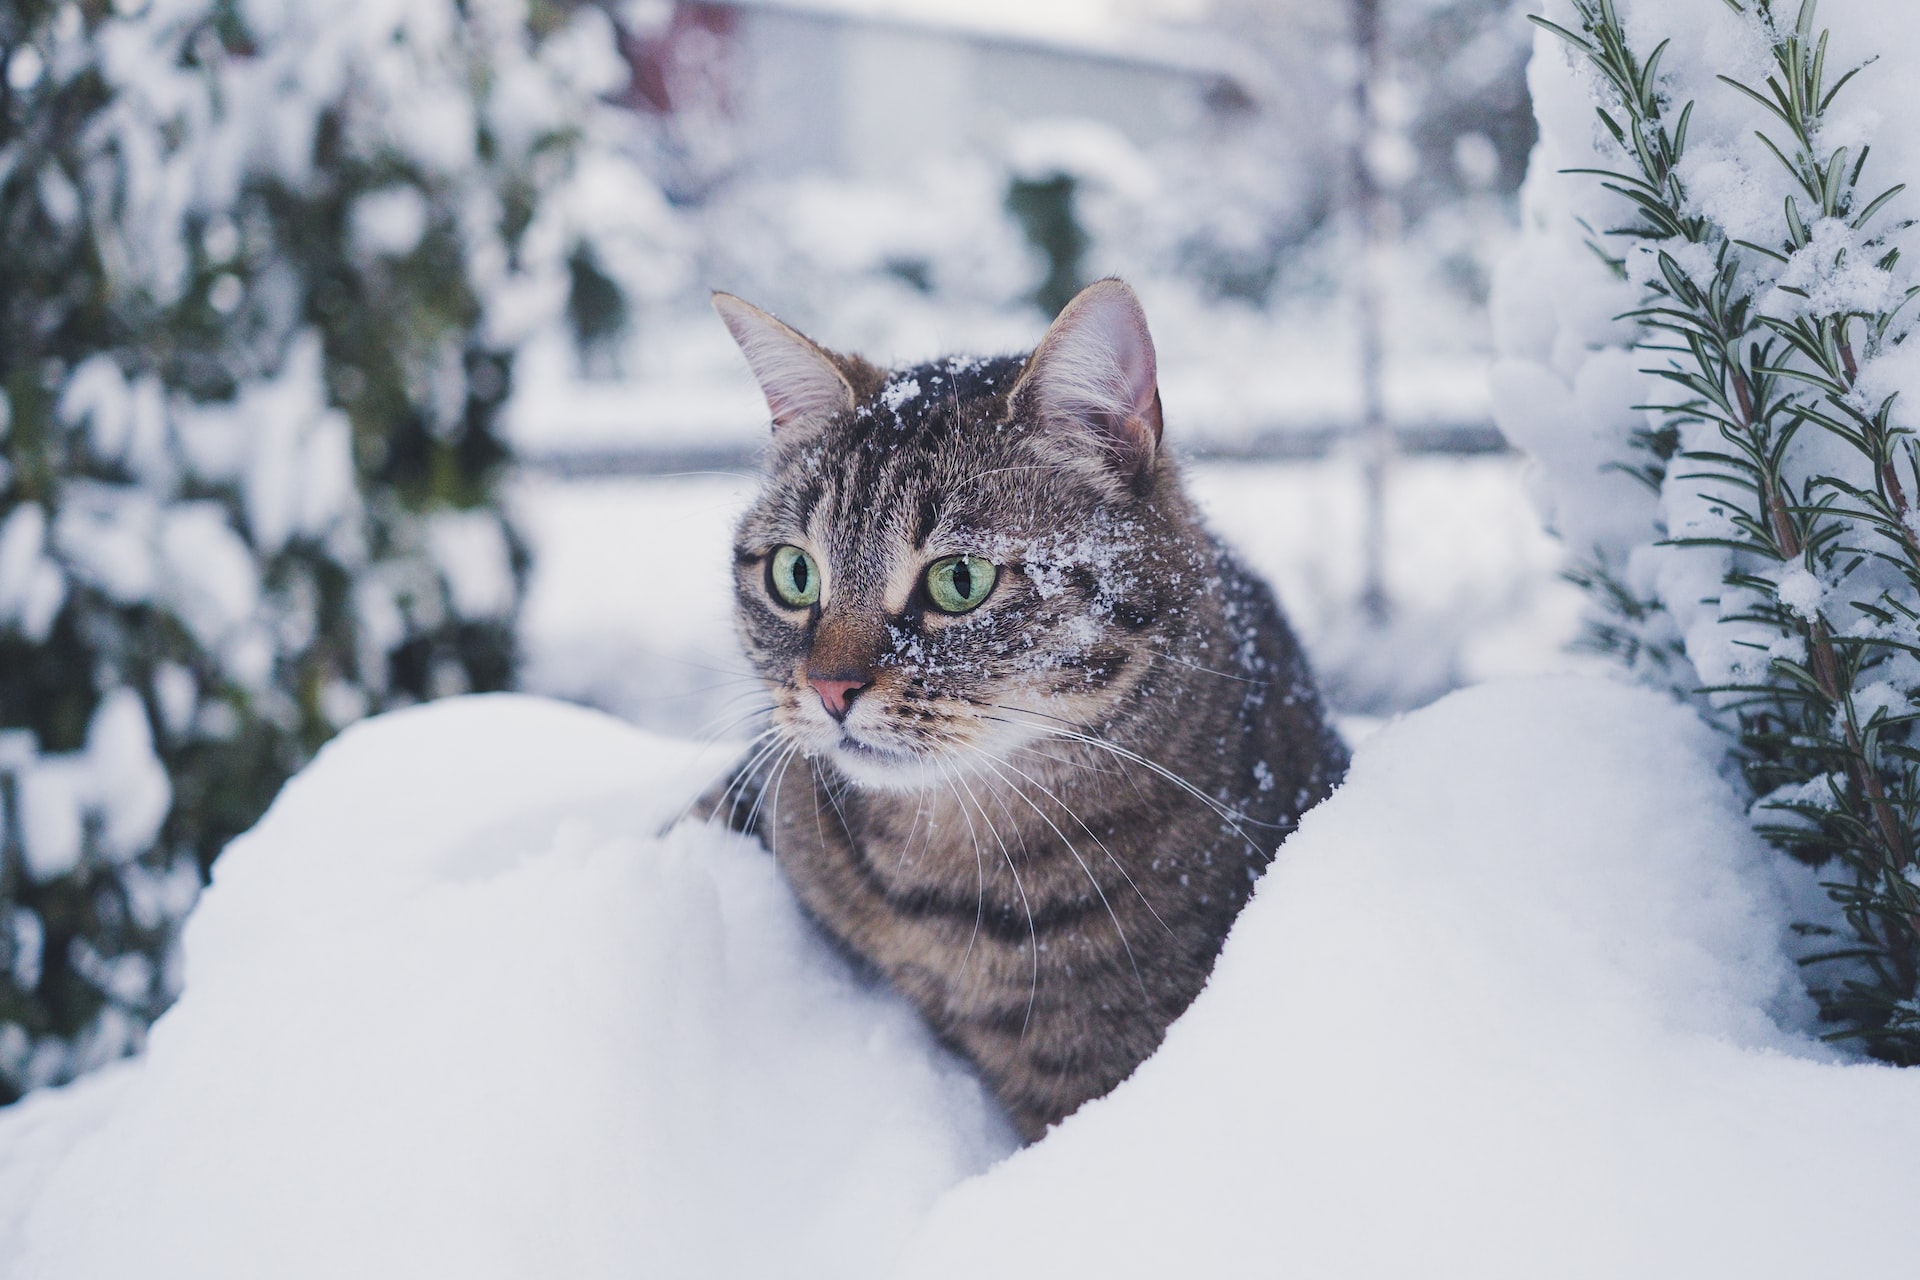 Cat sat in snow